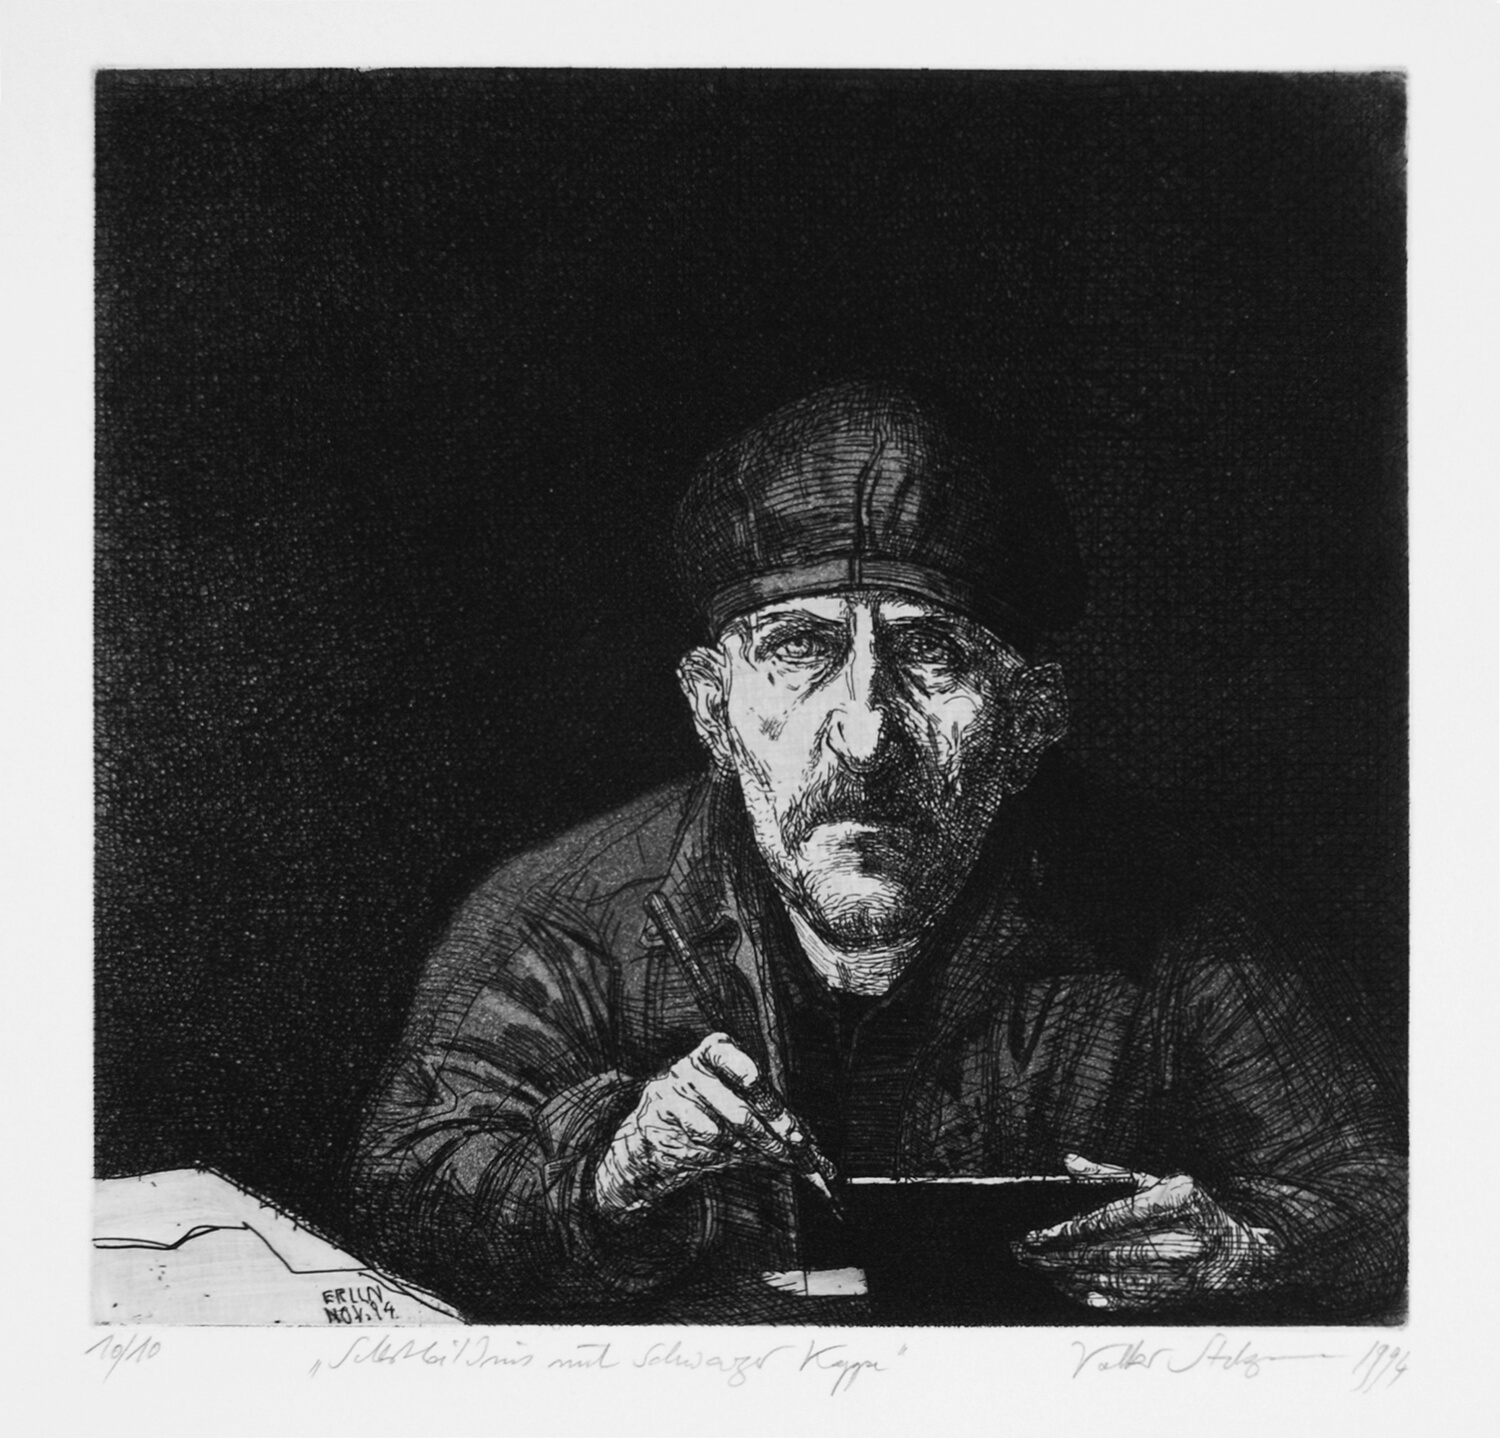 Volker Stelzmann, Selbstbildnis mit schwarzer Kappe, 1994, Radierung, Auflage: 10, Bild: 27,5 x 28,8 cm, Blatt: 53,3 x 50 cm